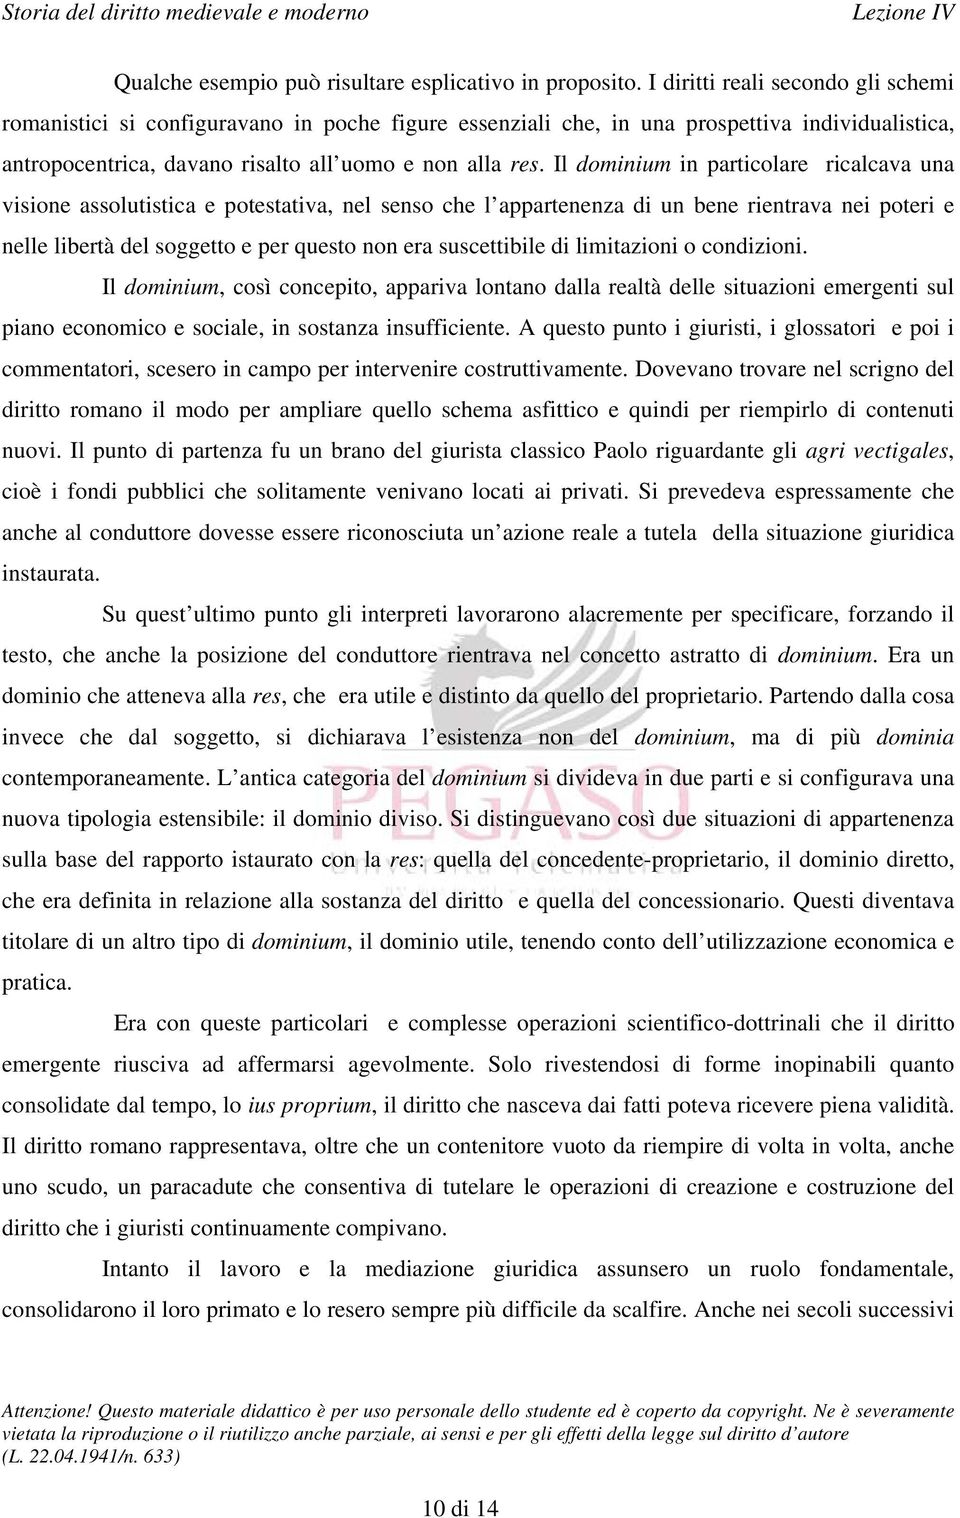 Storia Del Diritto Medievale E Moderno Indice 1 La Scuola Dei Commentatori Origini Ed Obiettivi Pdf Free Download